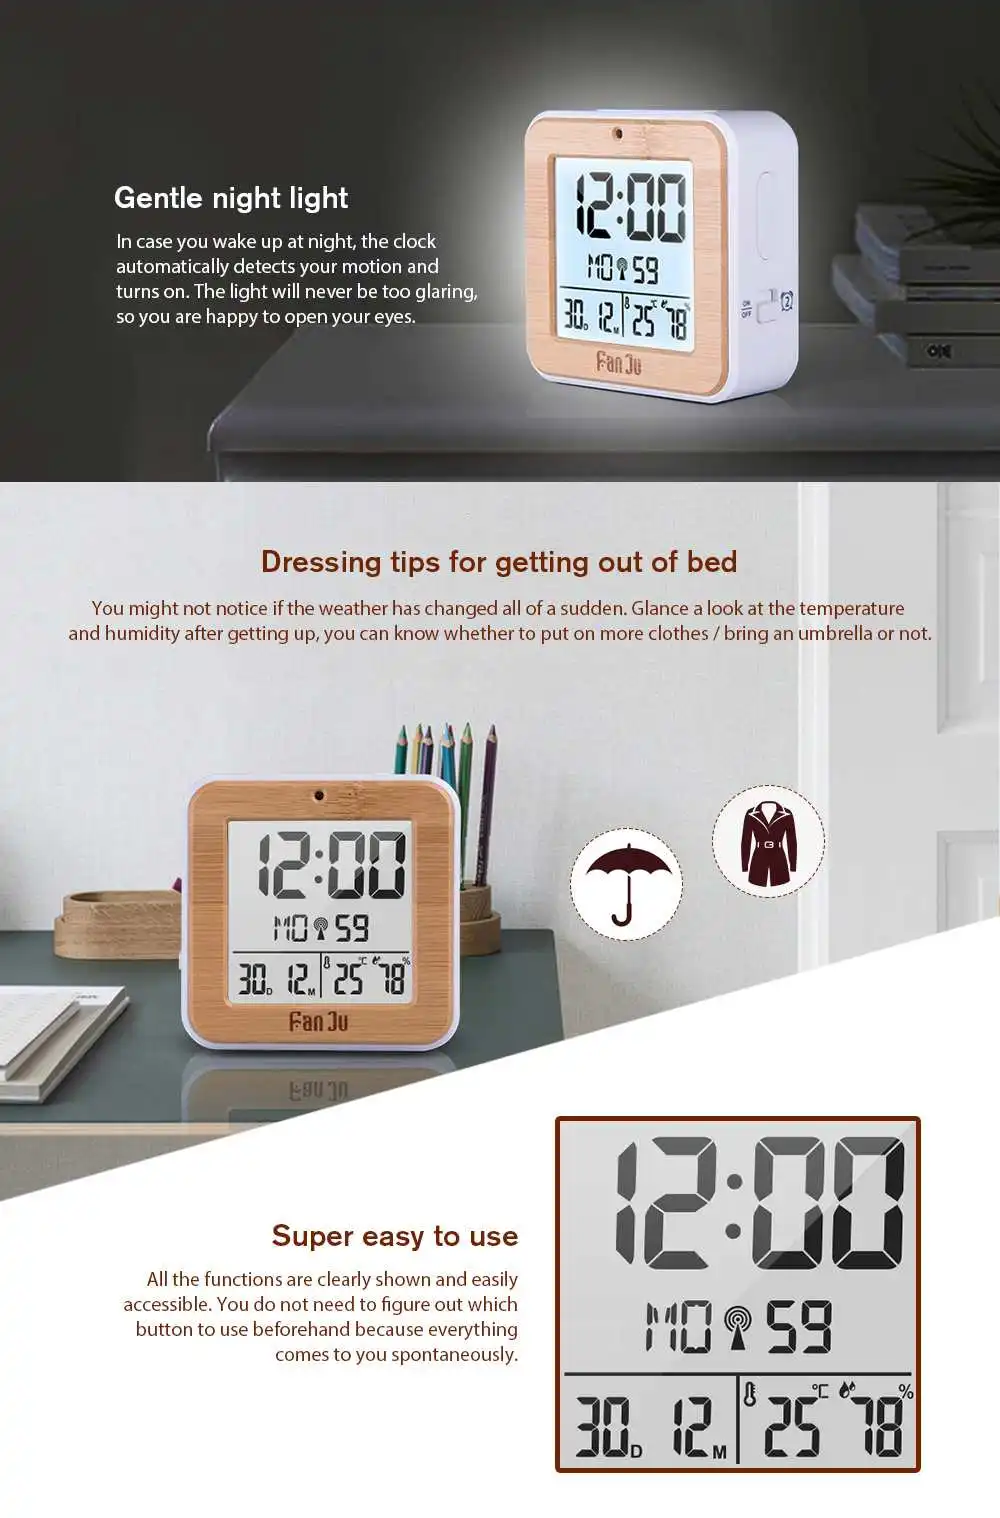 FanJu FJ3533 цифровой будильник светодиодный датчик температуры и влажности двойной будильник Авто Подсветка Повтор Дата термометр настольные часы